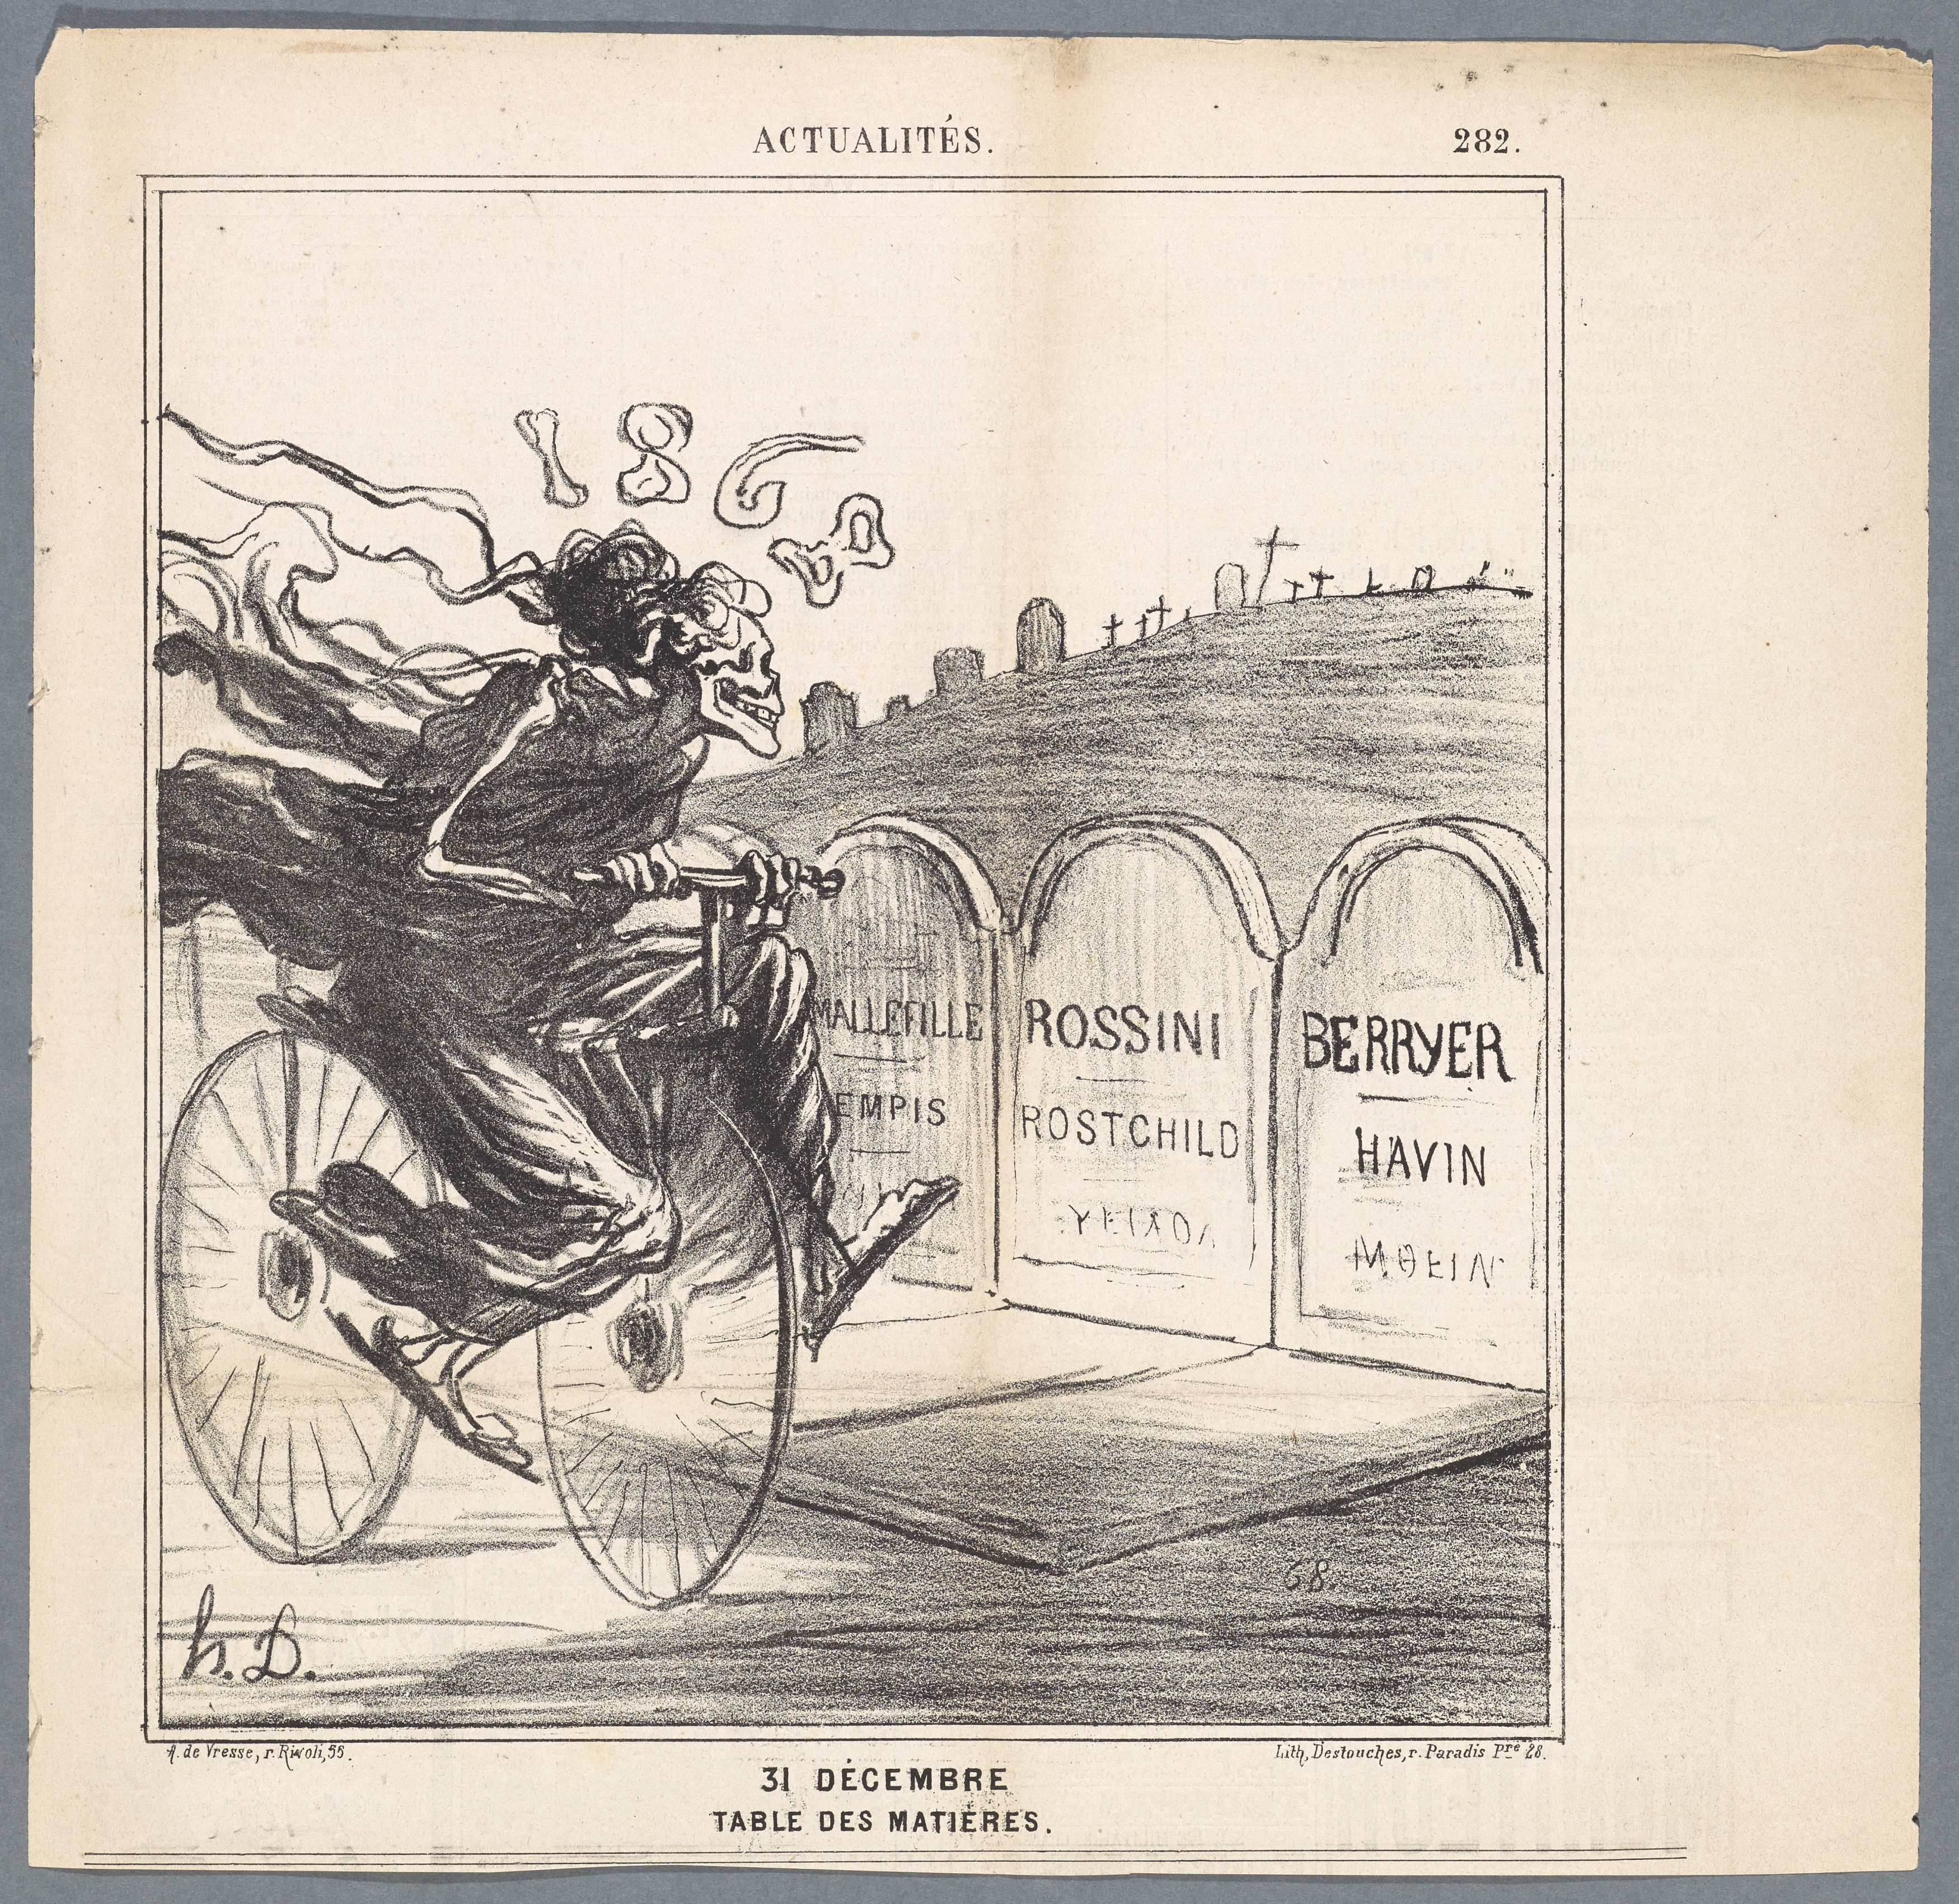 Honoré Daumier, *31 Décembre: Table des matières*, Blatt 282 der Serie *Actualités*; erschienen in: *Le Charivari*, 31. Dezember 1868